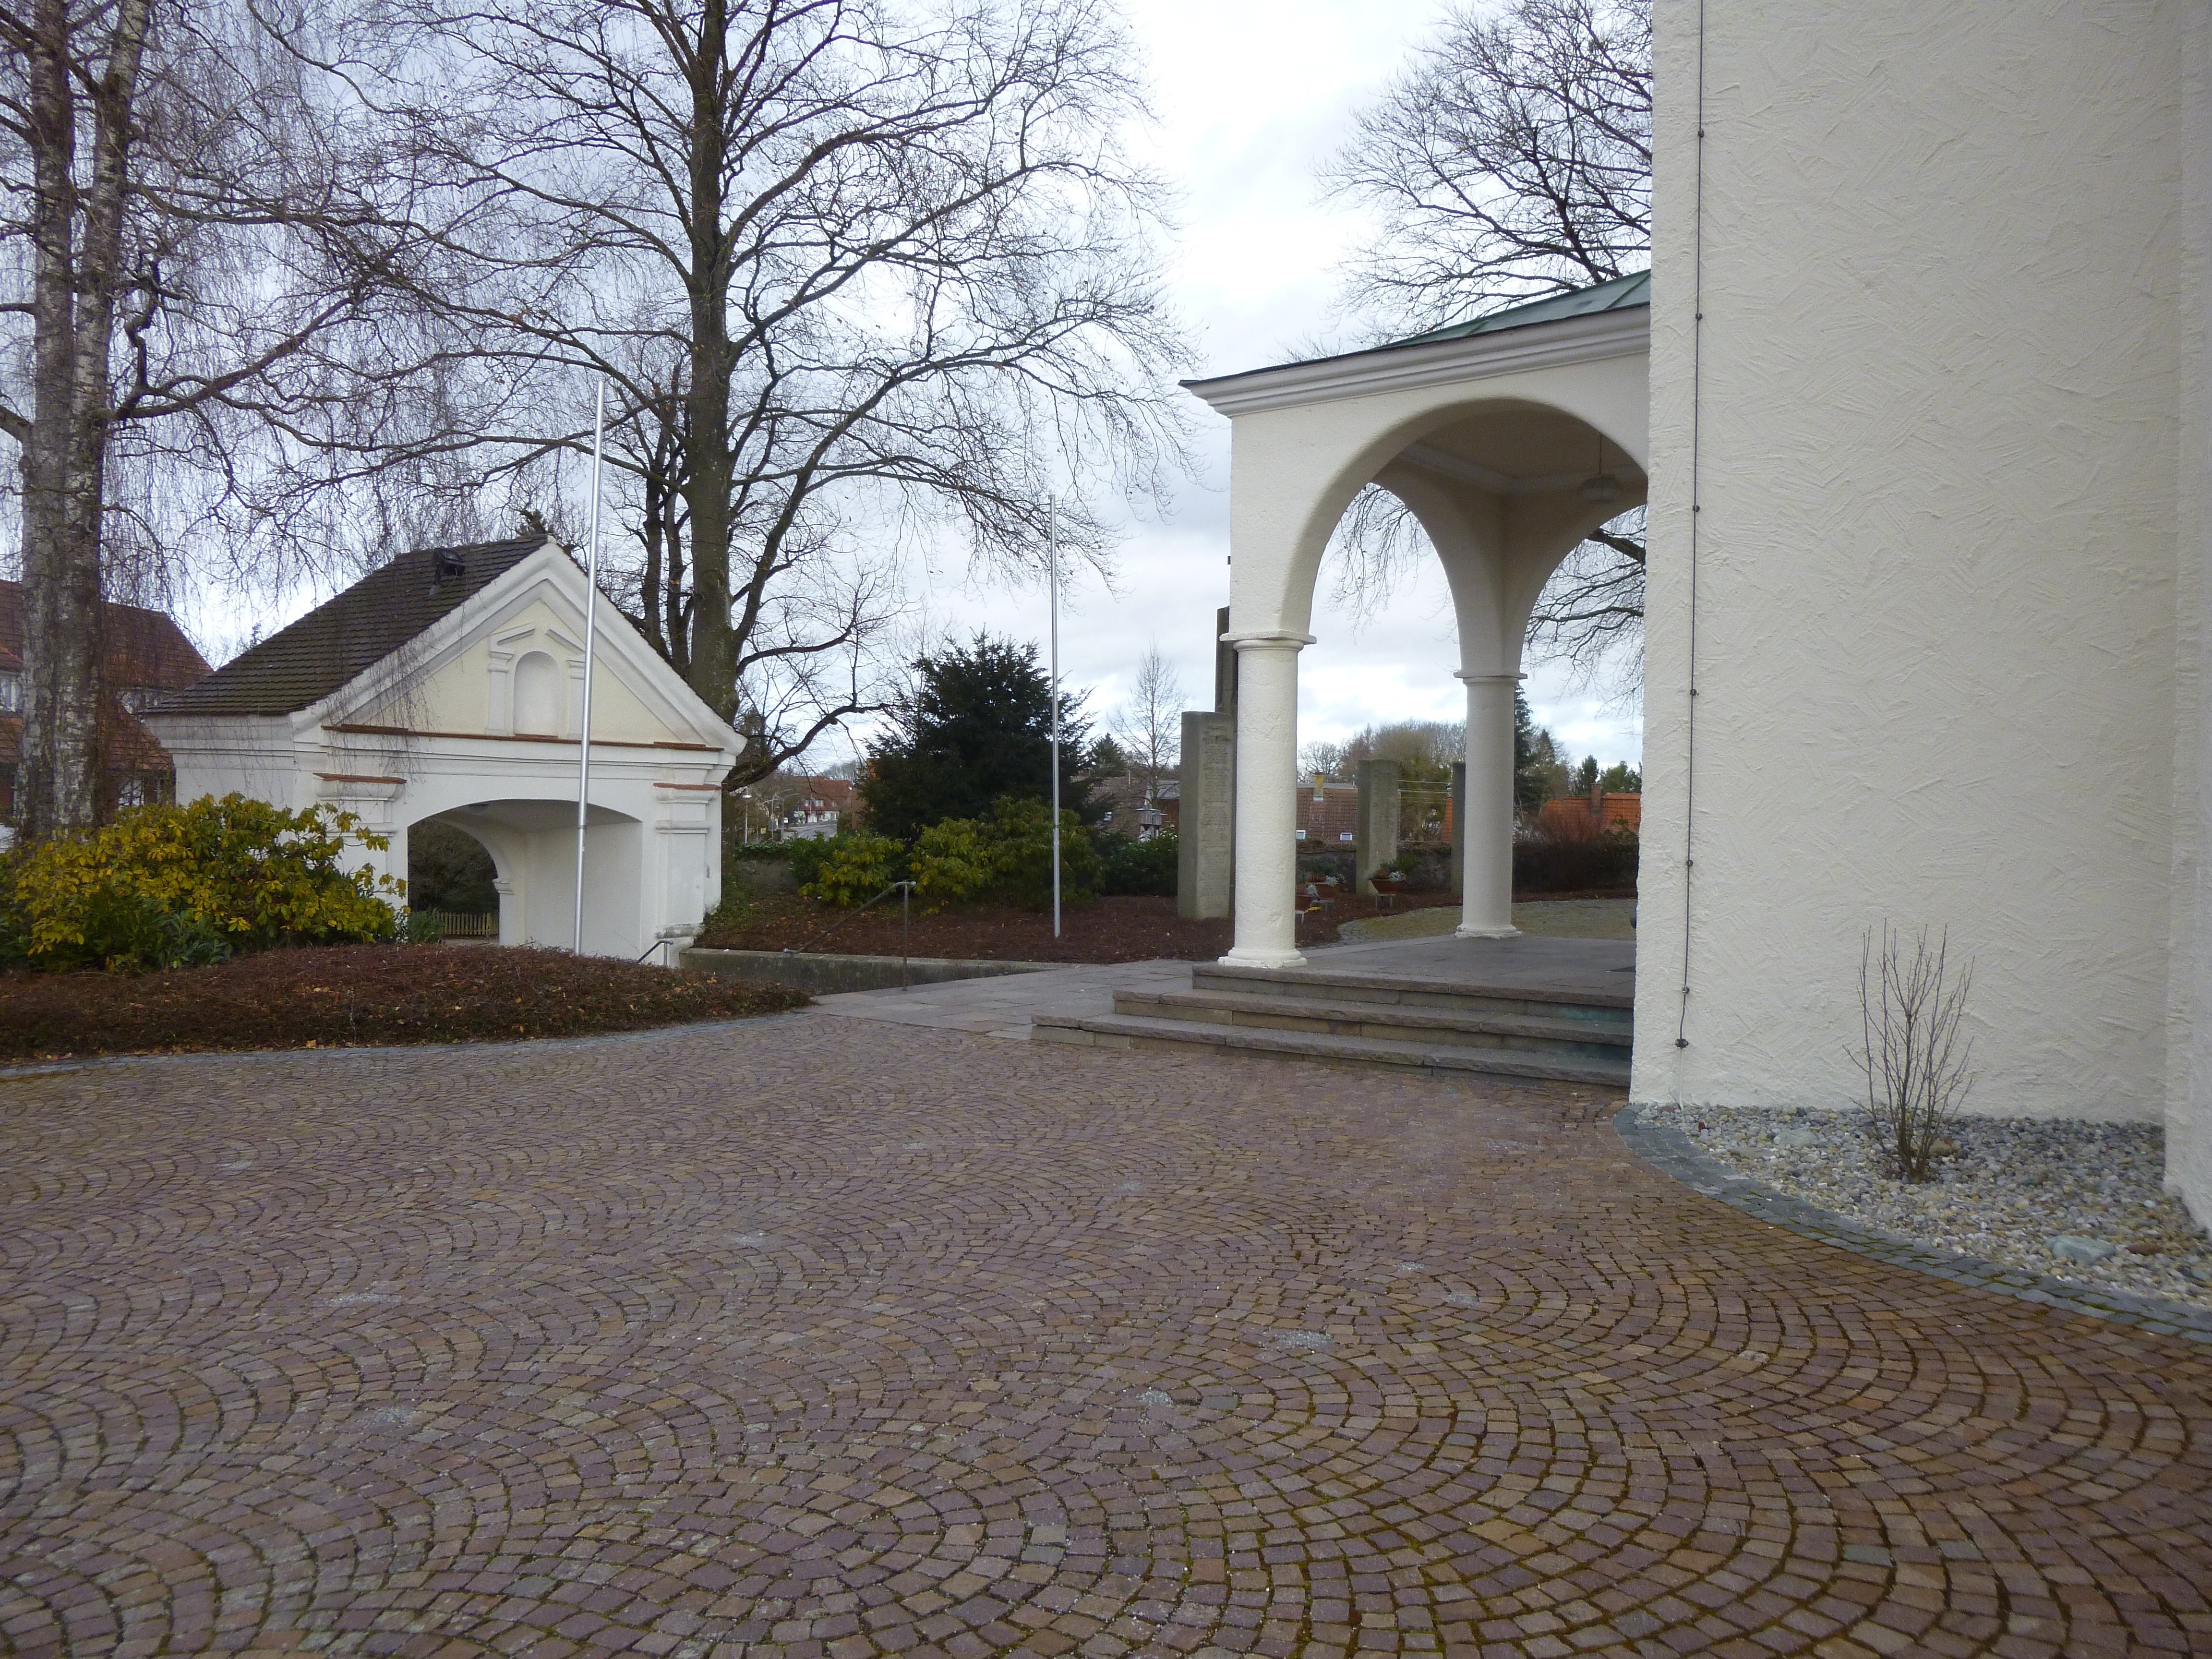  Kirchhof 